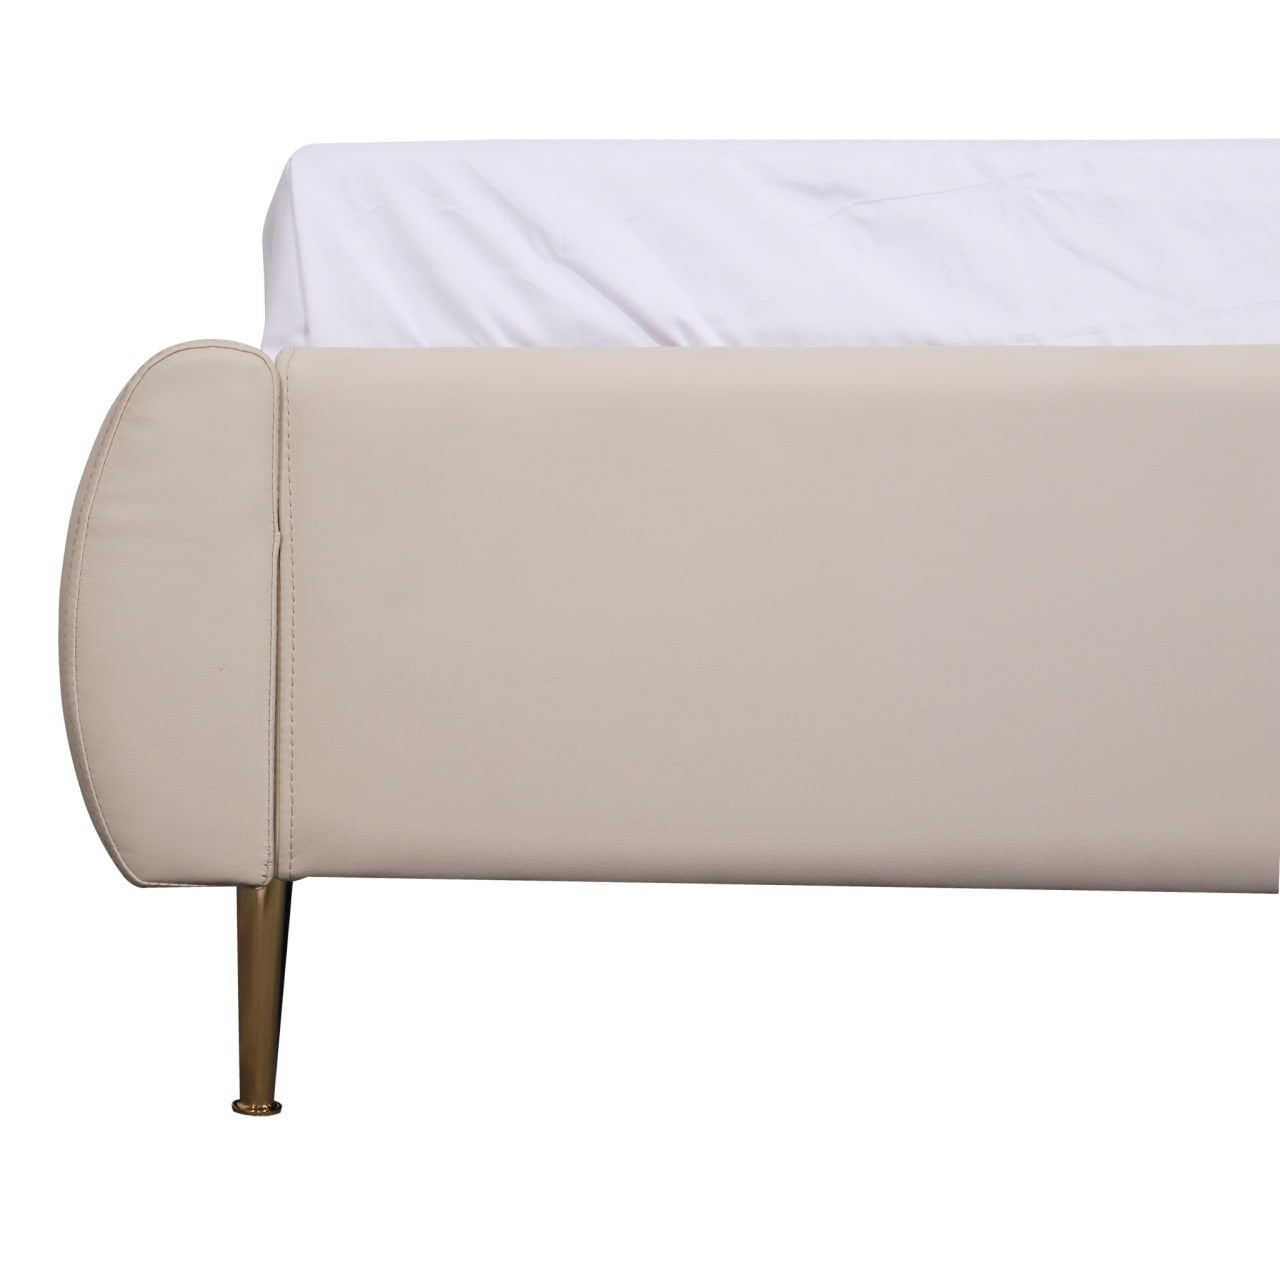 LANY Upholstered Bed AF Home